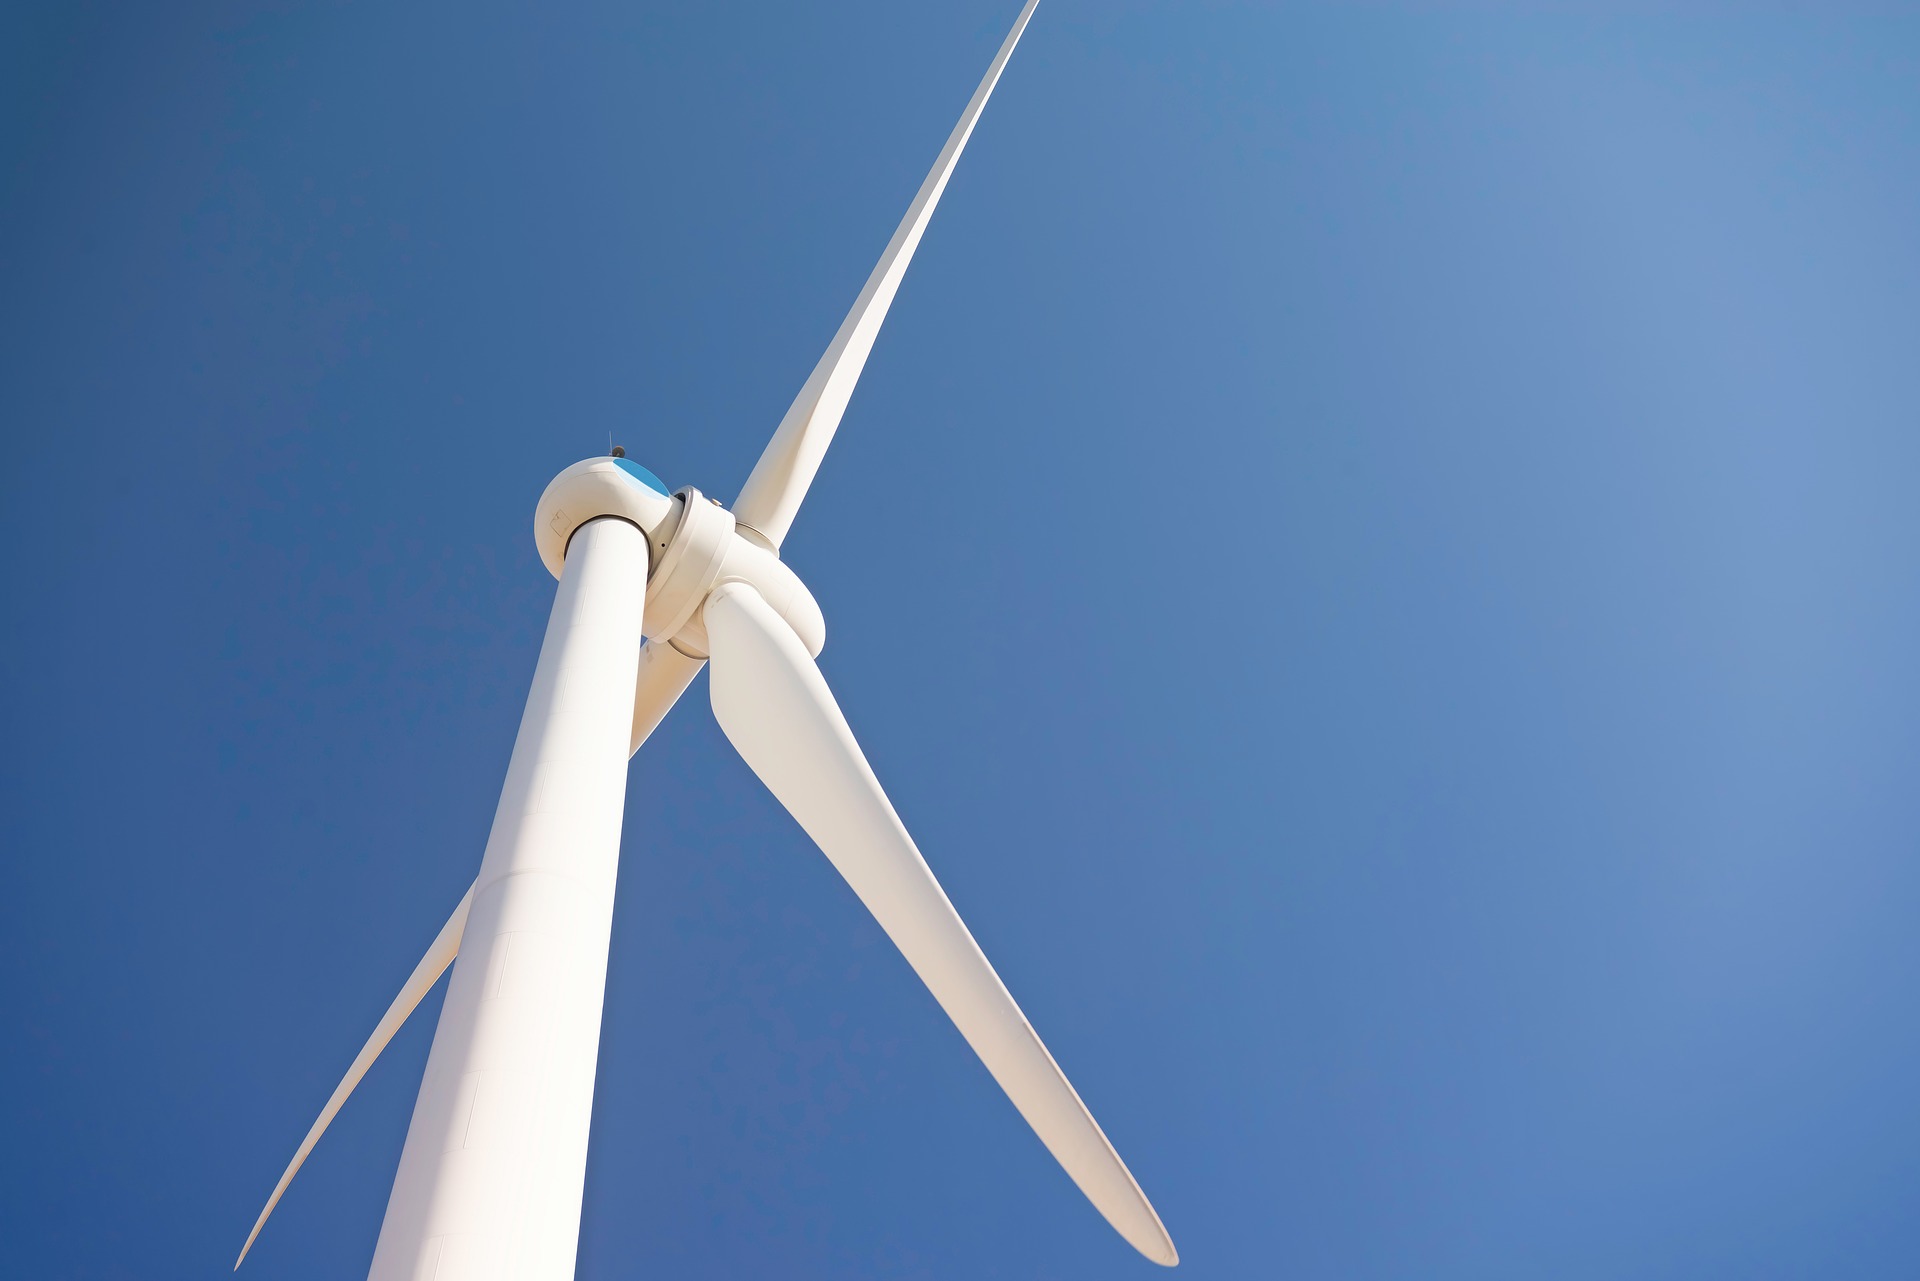 Komisja Wspólna Rządu i Samorządu pozytywnie zaopiniowała projekt nowelizacji ustawy o inwestycjach w zakresie elektrowni wiatrowych